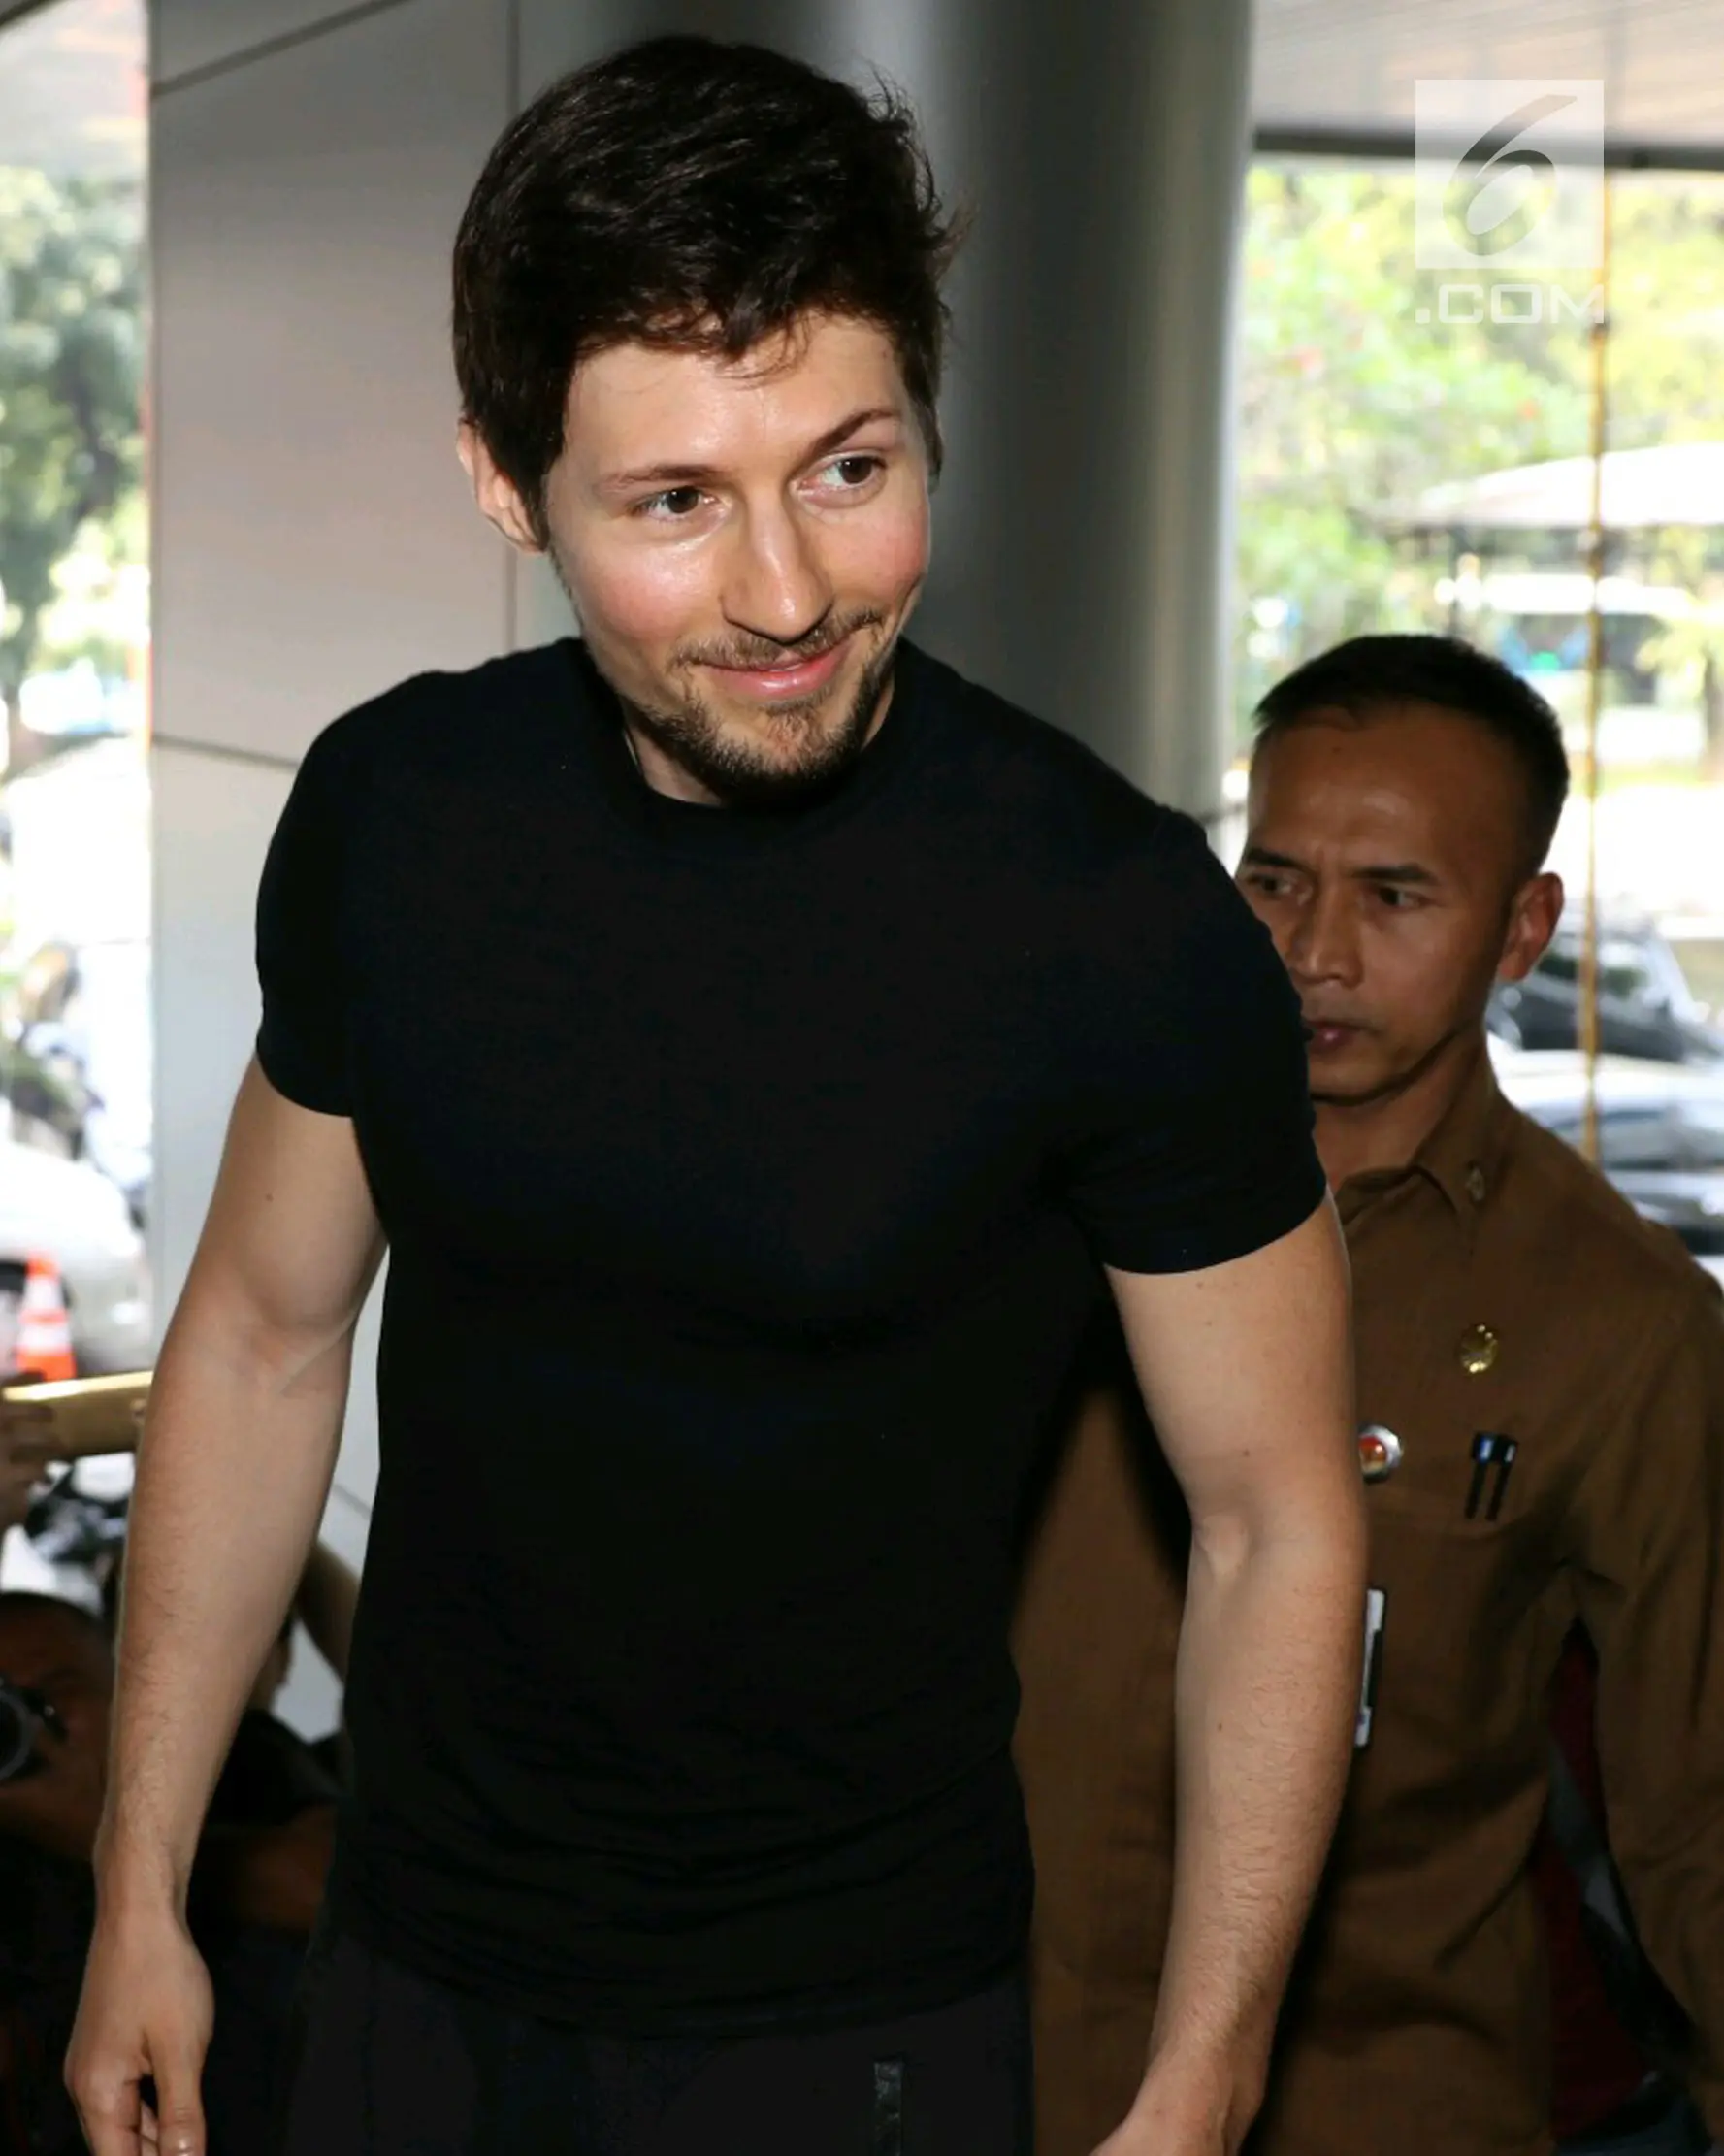 Pendiri sekaligus CEO Telegram, Pavel Durov mendatangi kantor pusat Kemenkominfo di Jakarta, Selasa (1/8). Kunjungan Pavel Durov ini berhubungan dengan pemblokiran 11 Domain Name System (DNS) situs web Telegram. (Liputan6.com/Angga Yuniar)